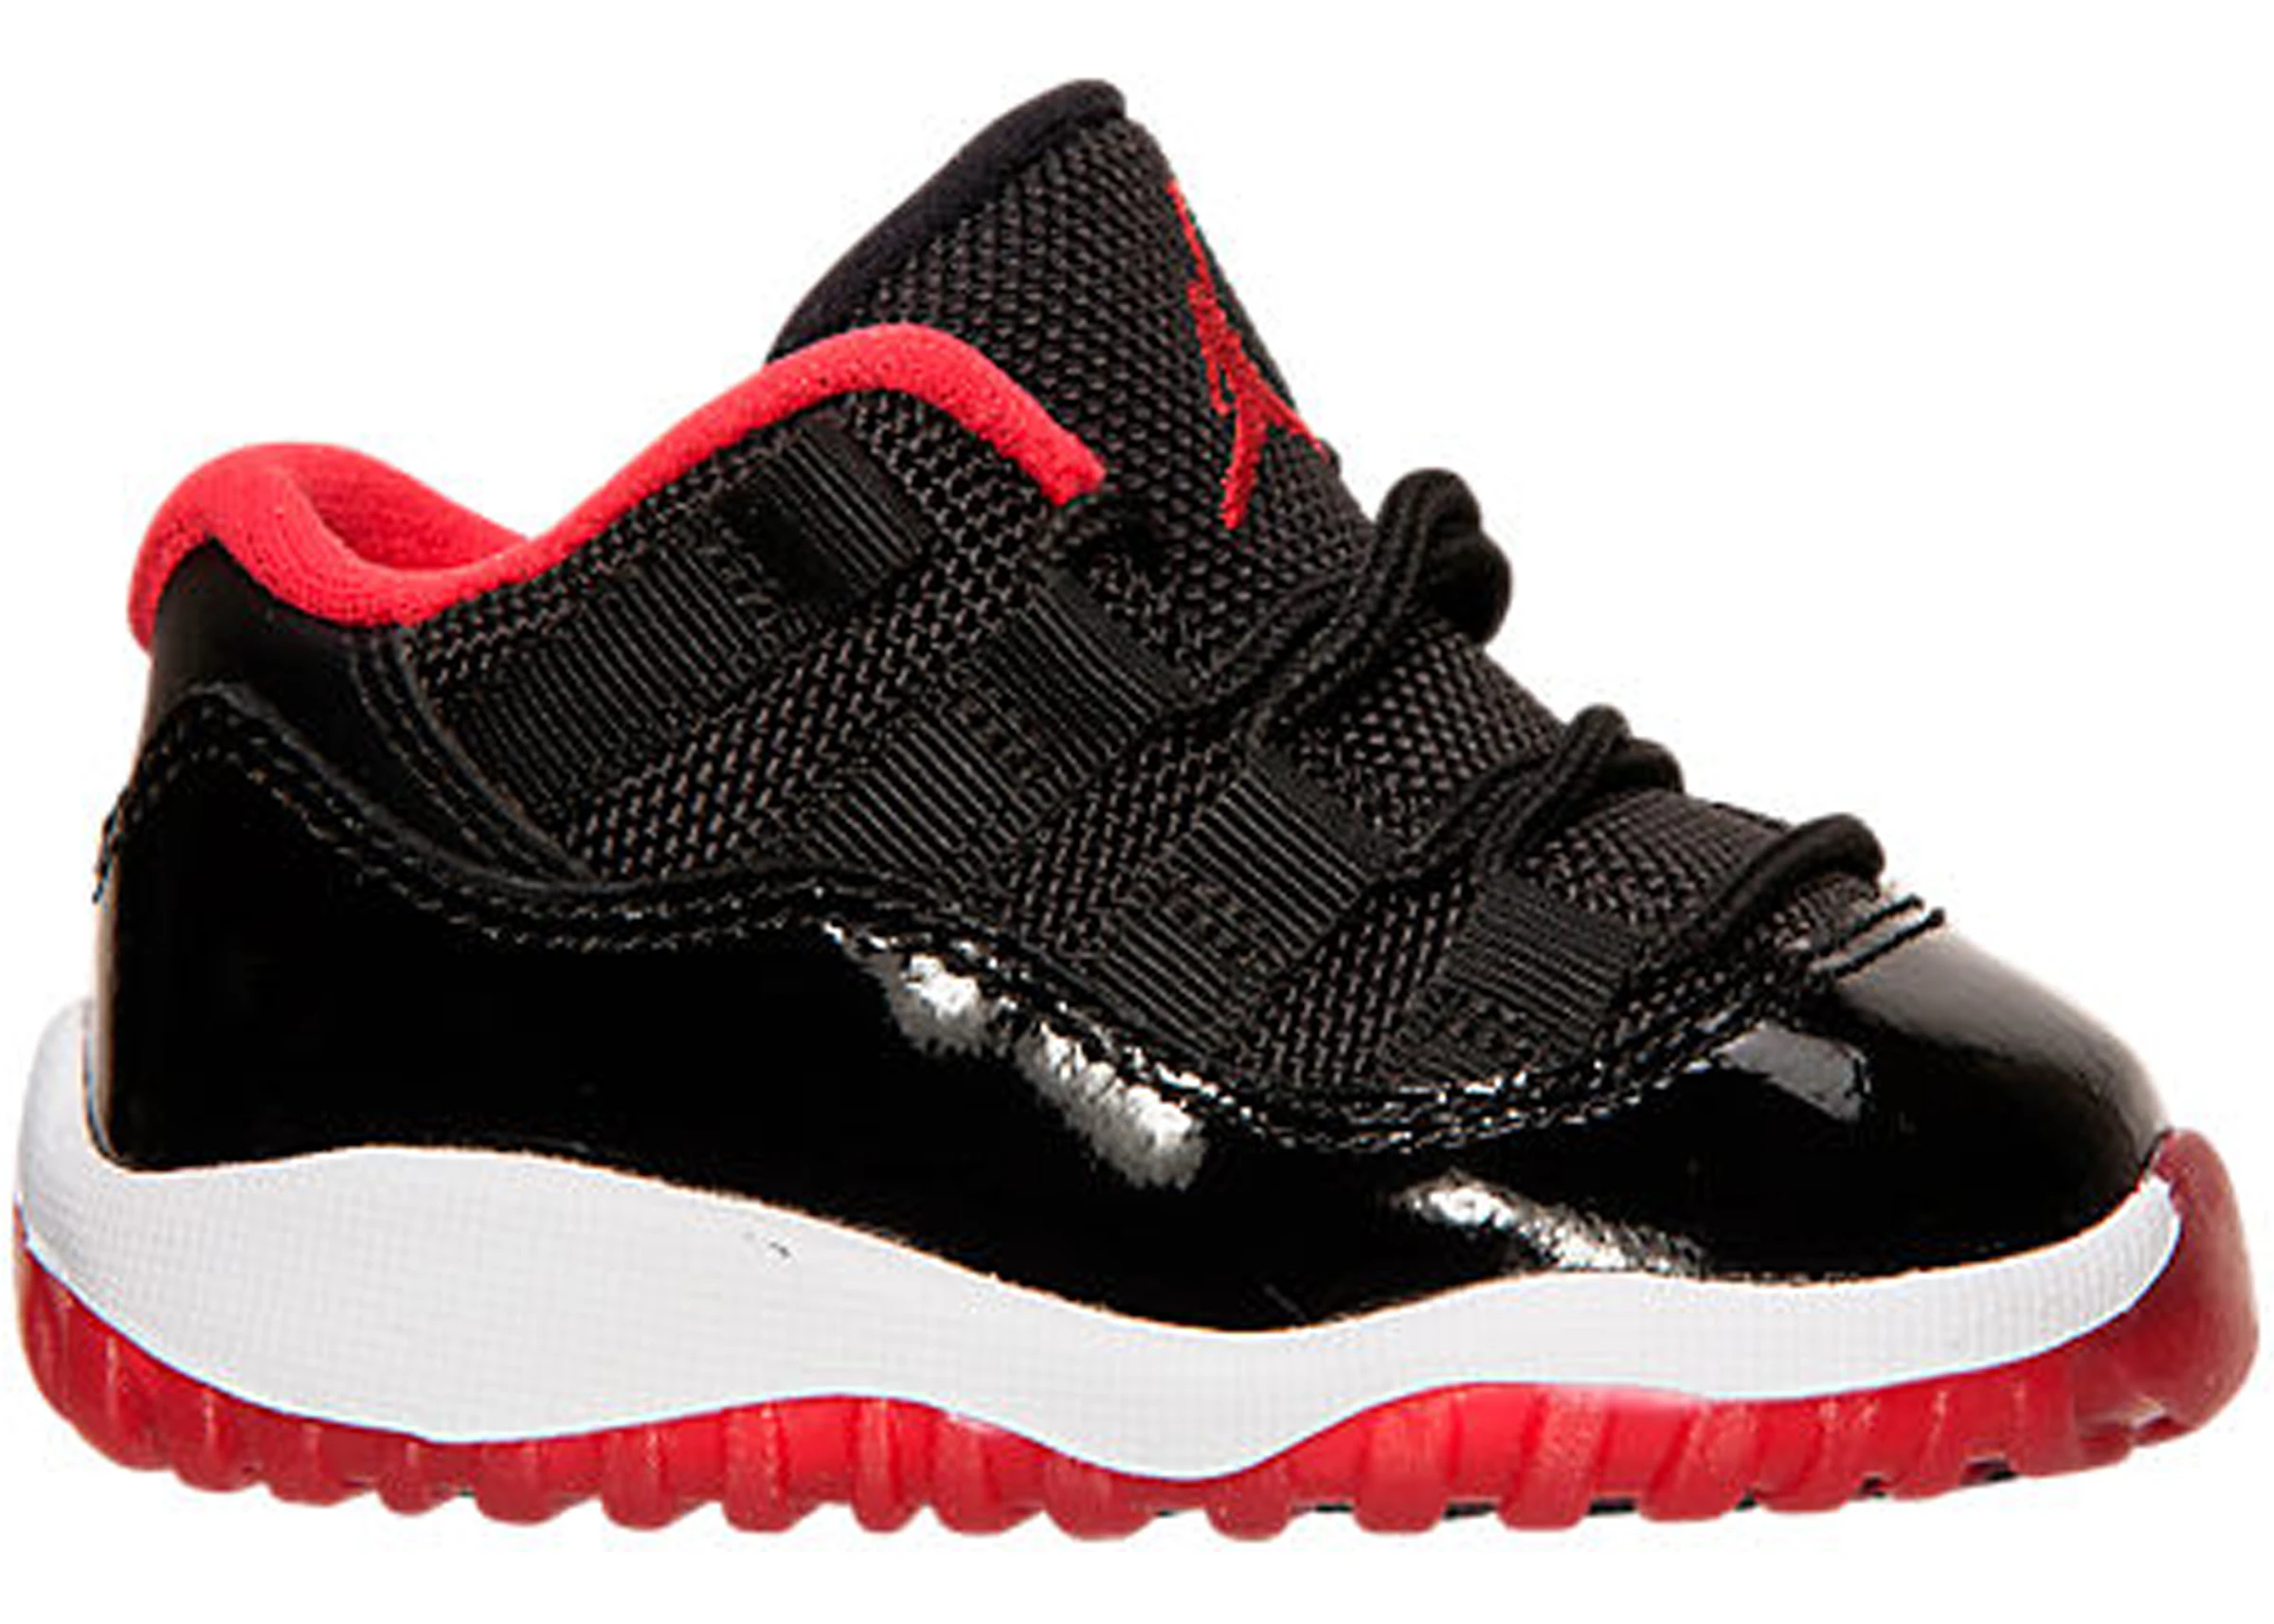 Buy Air Jordan Low Shoes & New Sneakers - StockX